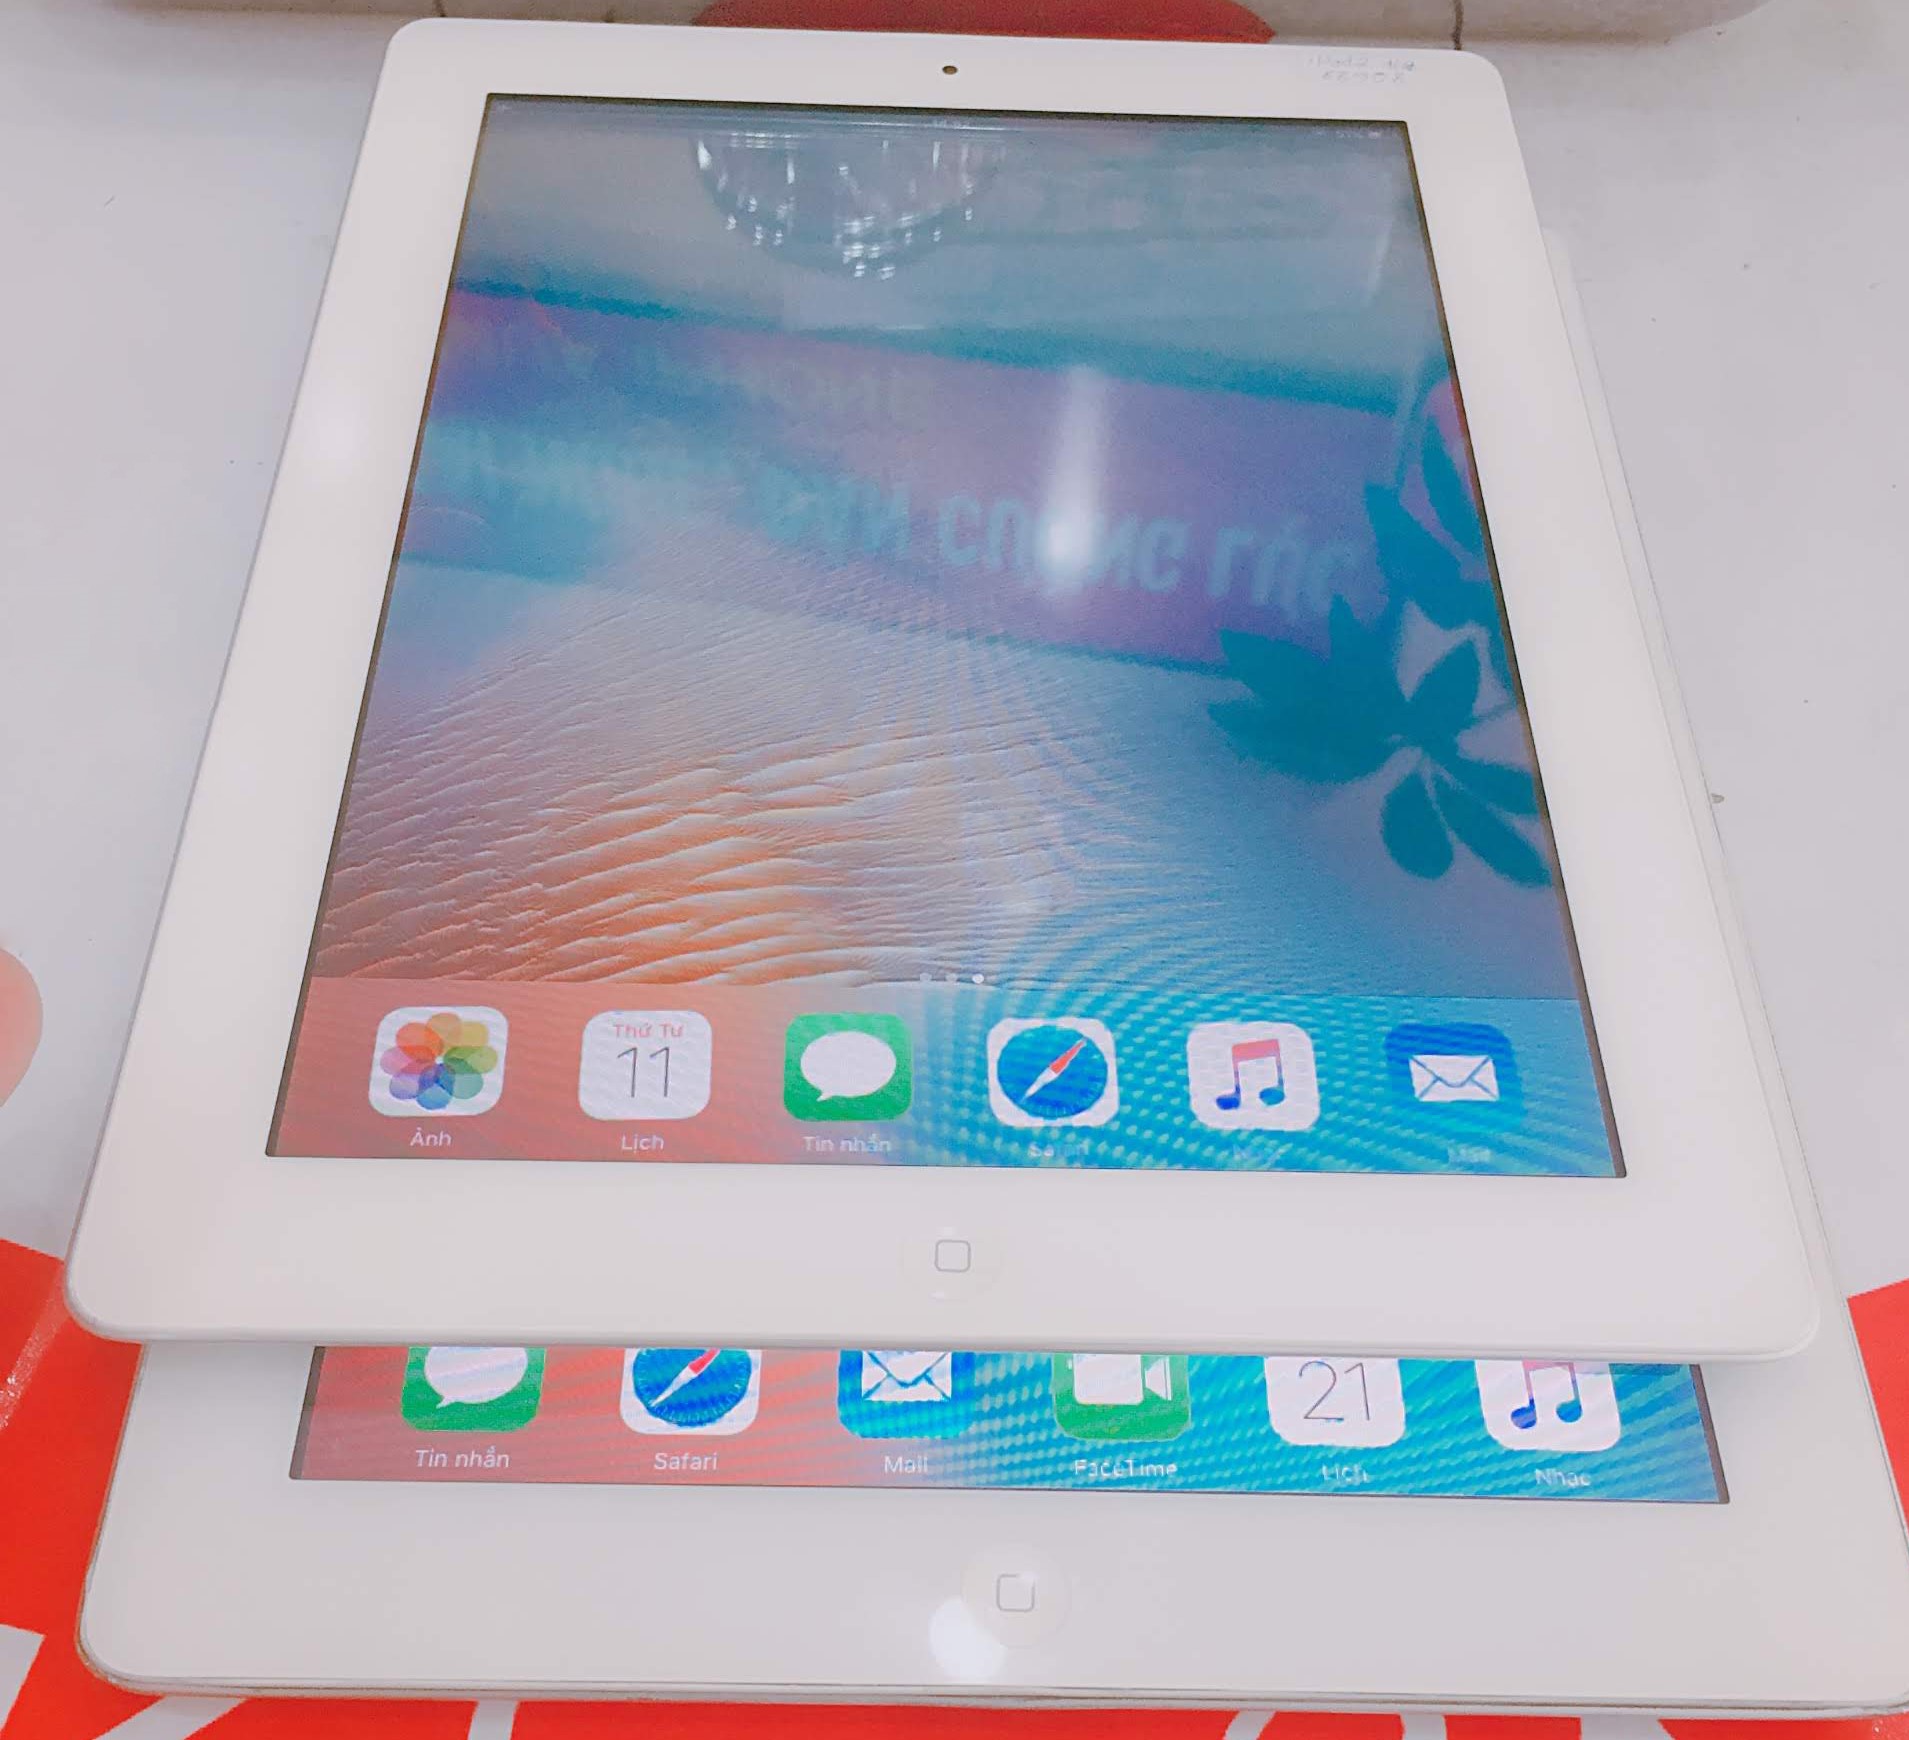 Màn hình iPad Mini 4 có hiệu năng hiển thị tốt hơn iPad Pro  Công nghệ   Vietnam VietnamPlus